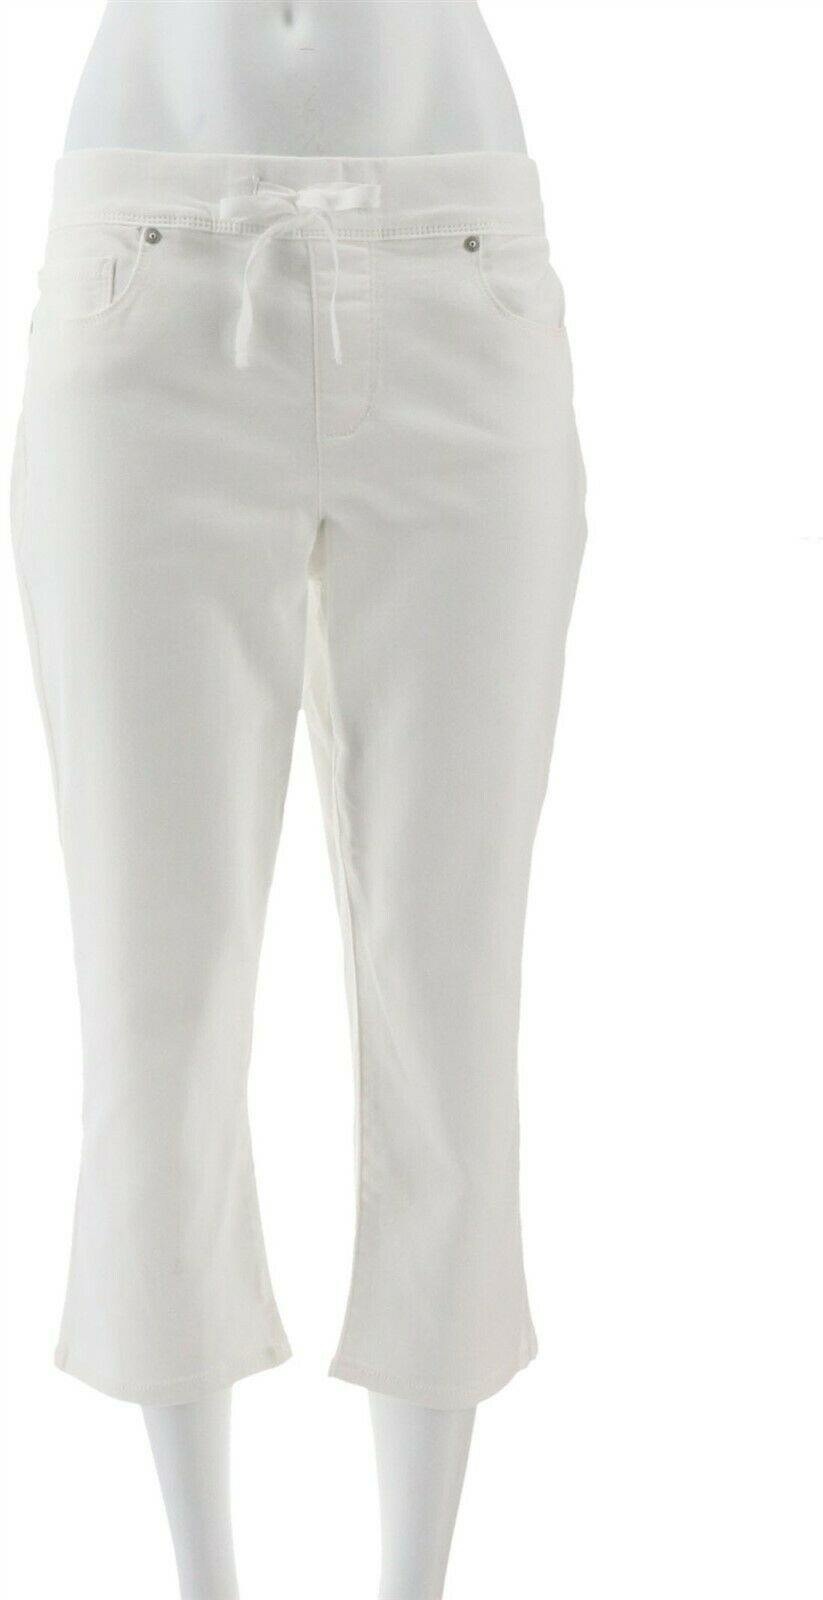 Martha Stewart Knit Denim Pull-On Capri Jeans Optic White 4 NEW A309326